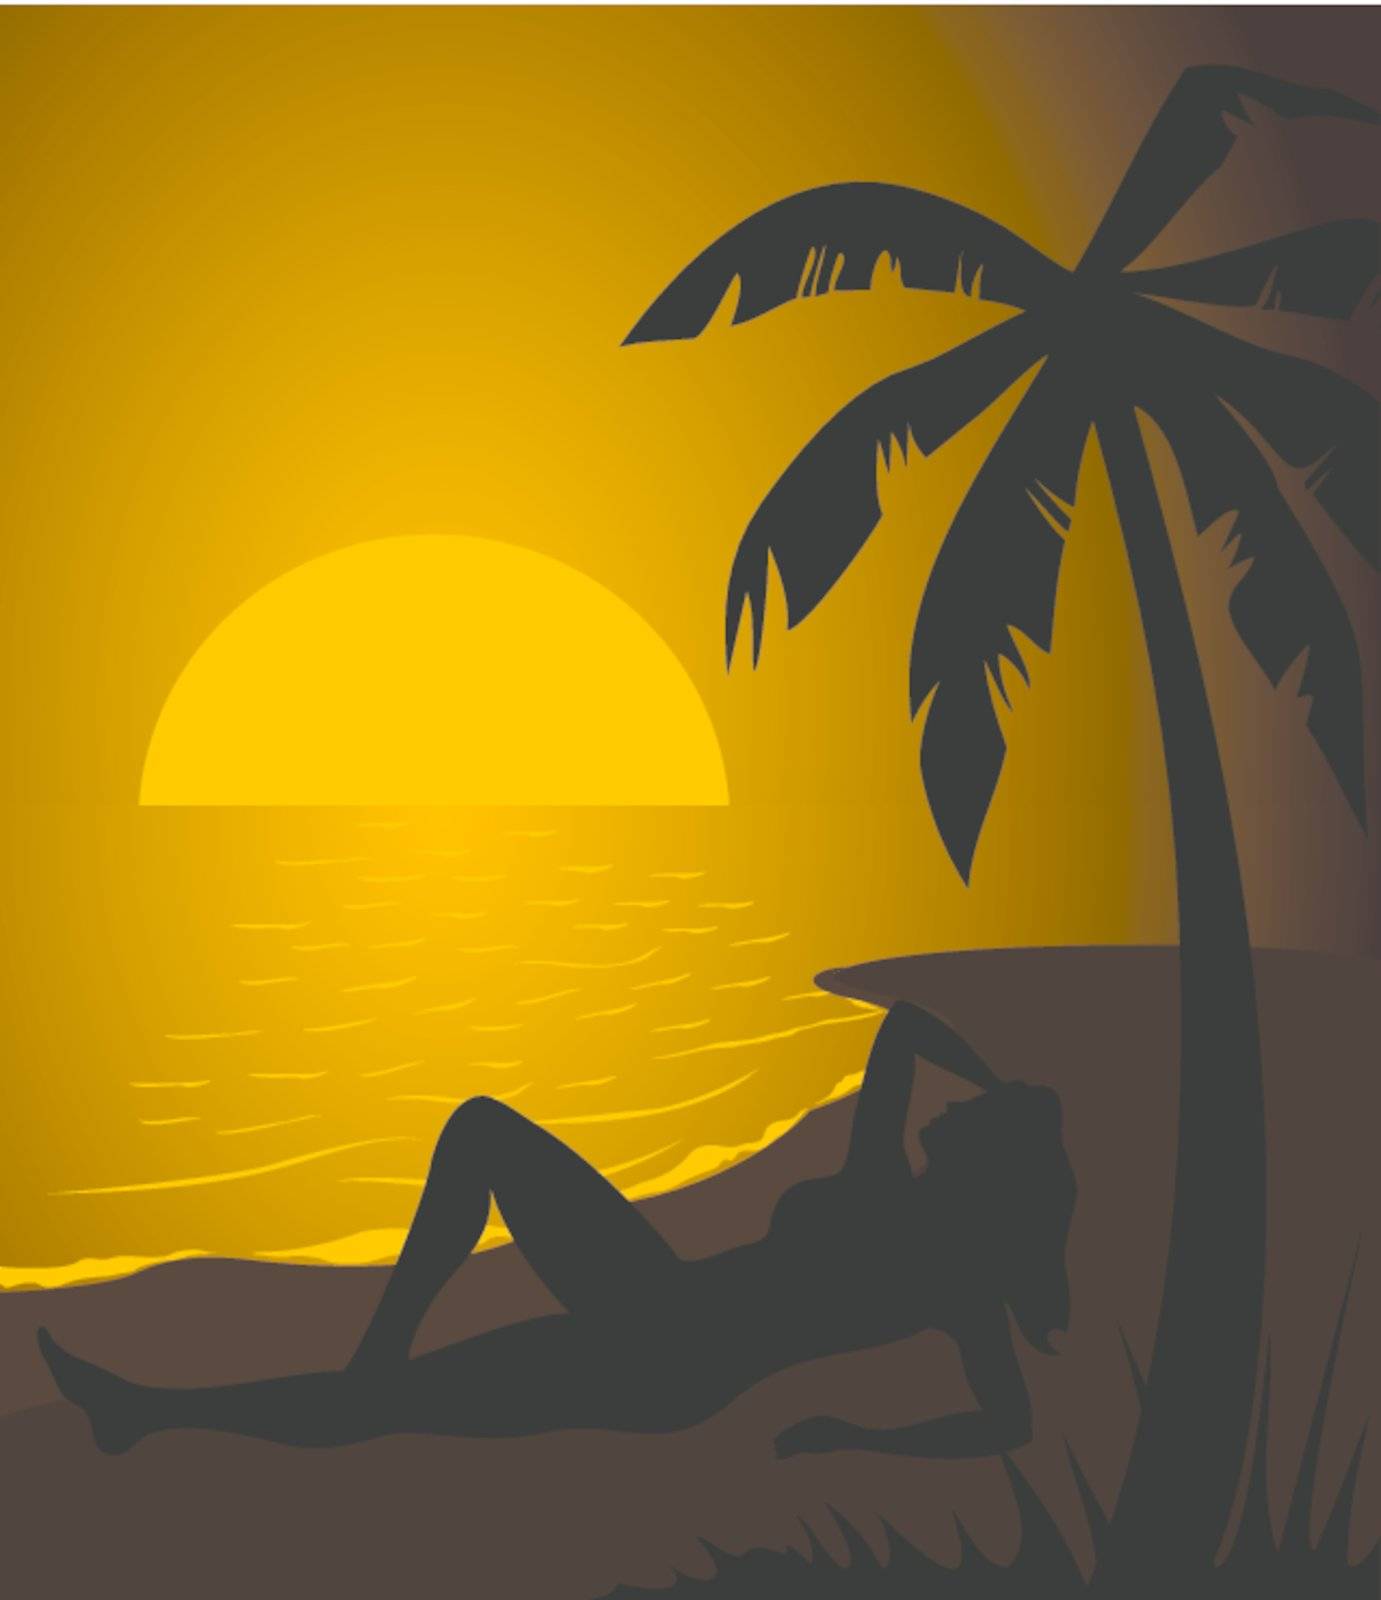 The girl lays on a beach on a decline. A vector illustration